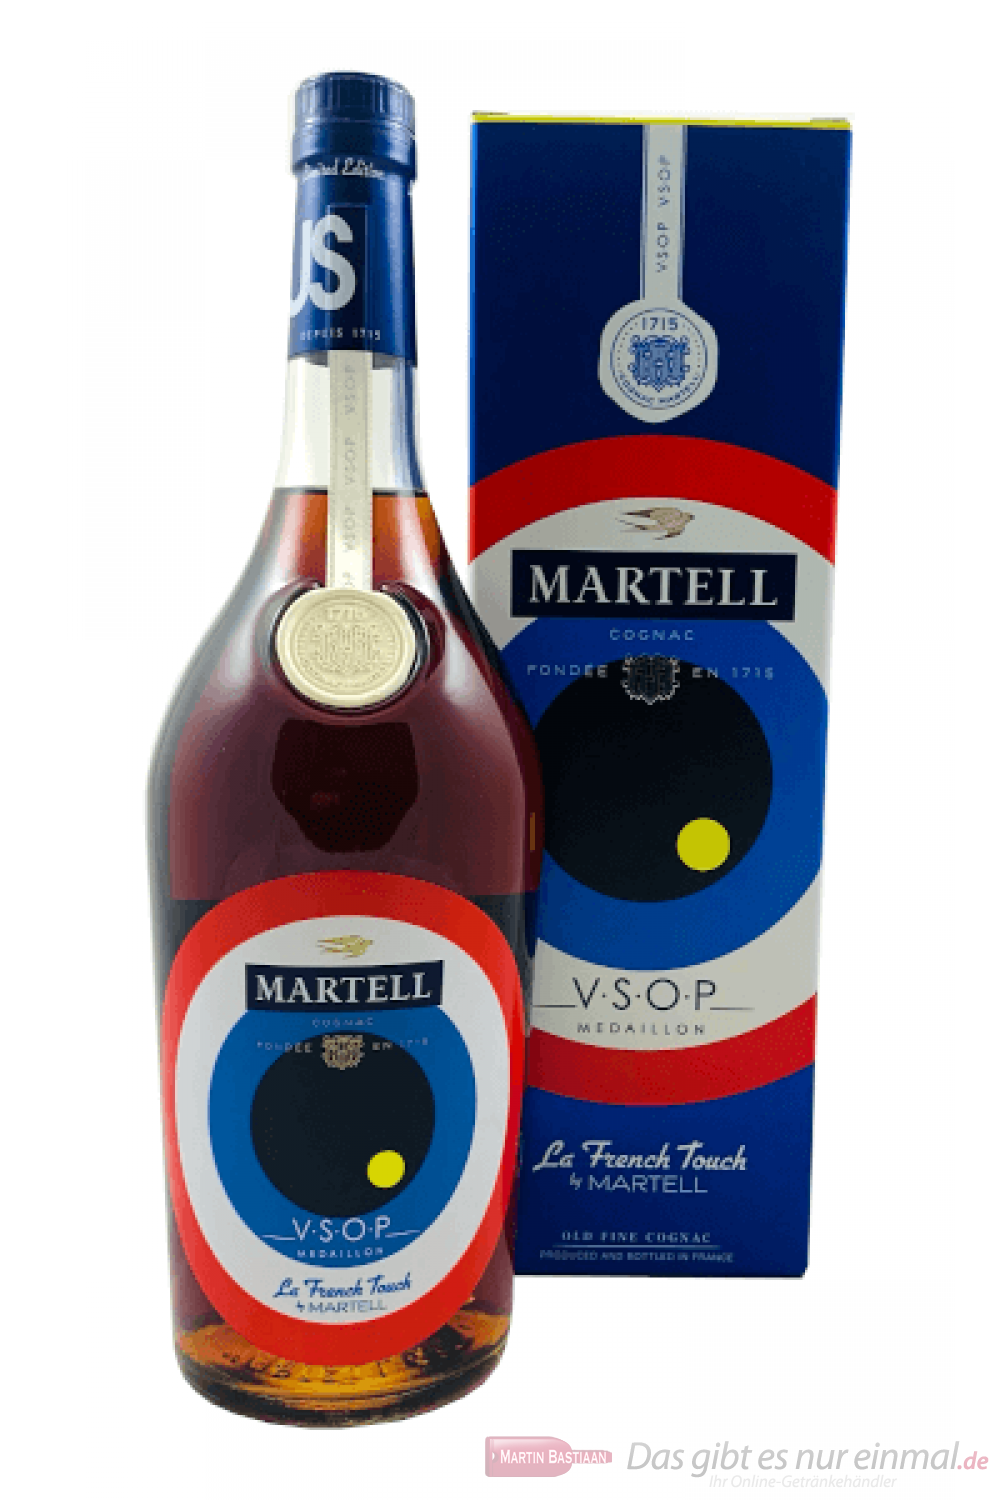 Martell VSOP La French Touch Edition Cognac 1,0l